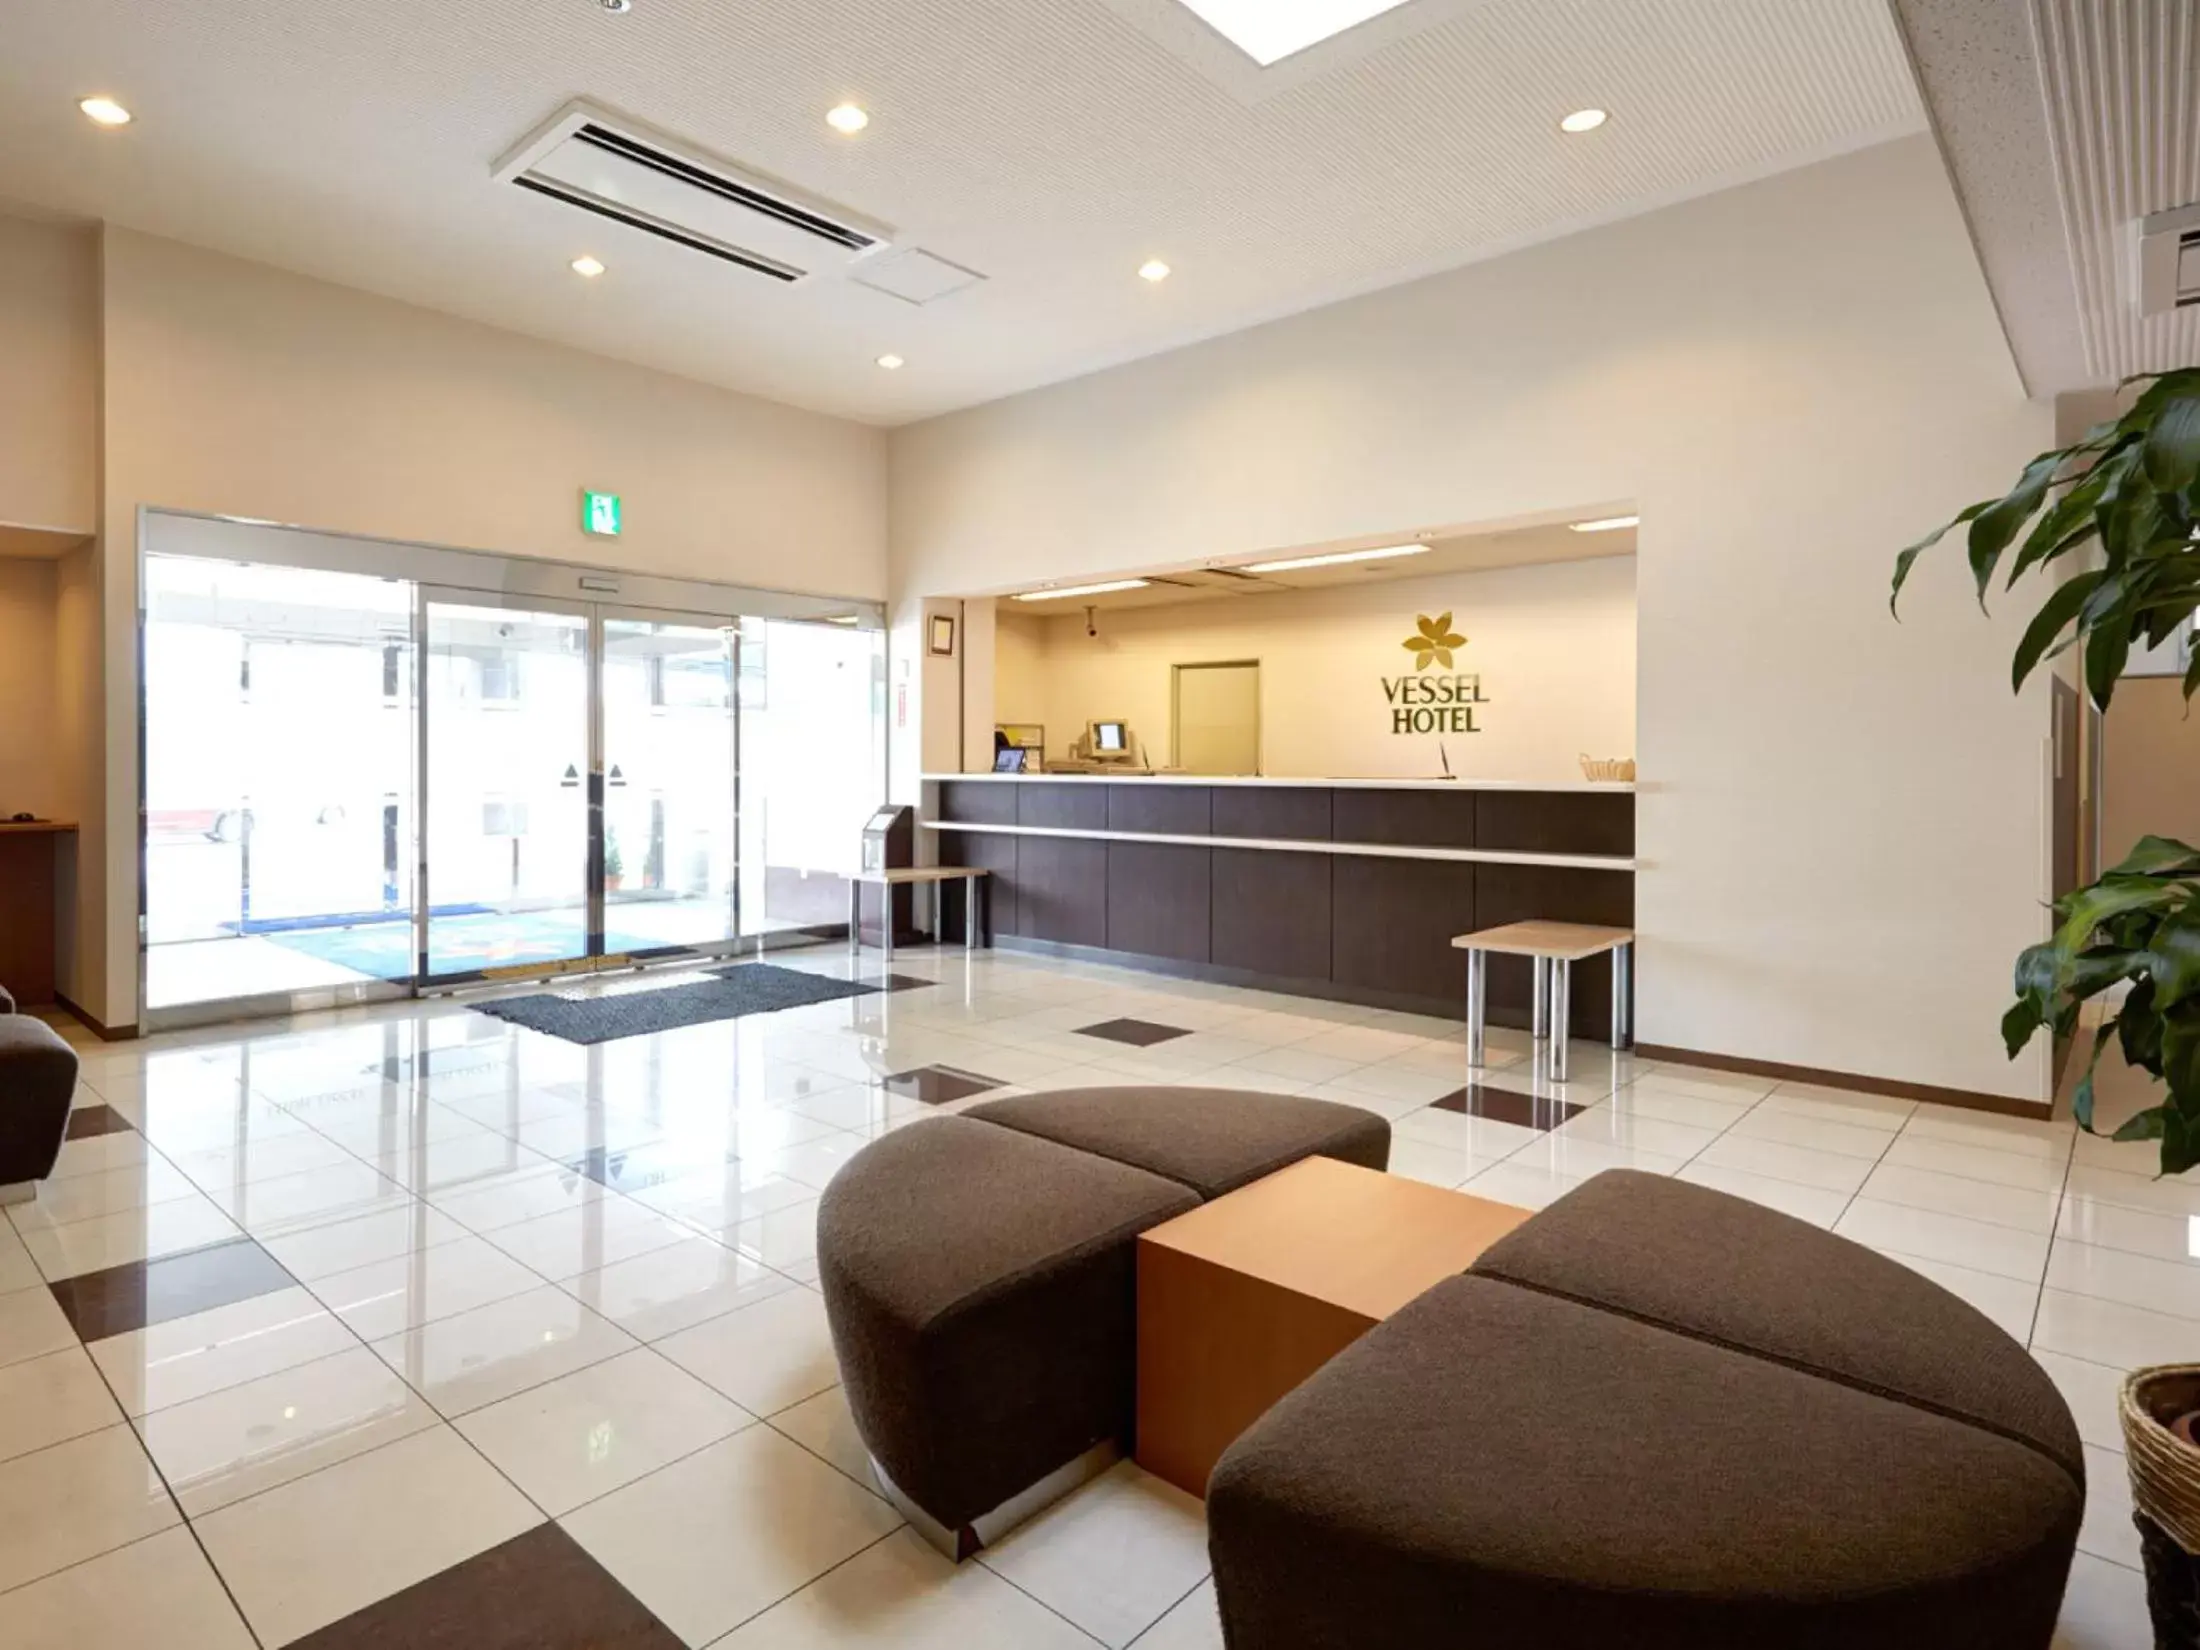 Lobby or reception, Lobby/Reception in Vessel Hotel Fukuoka Kaizuka